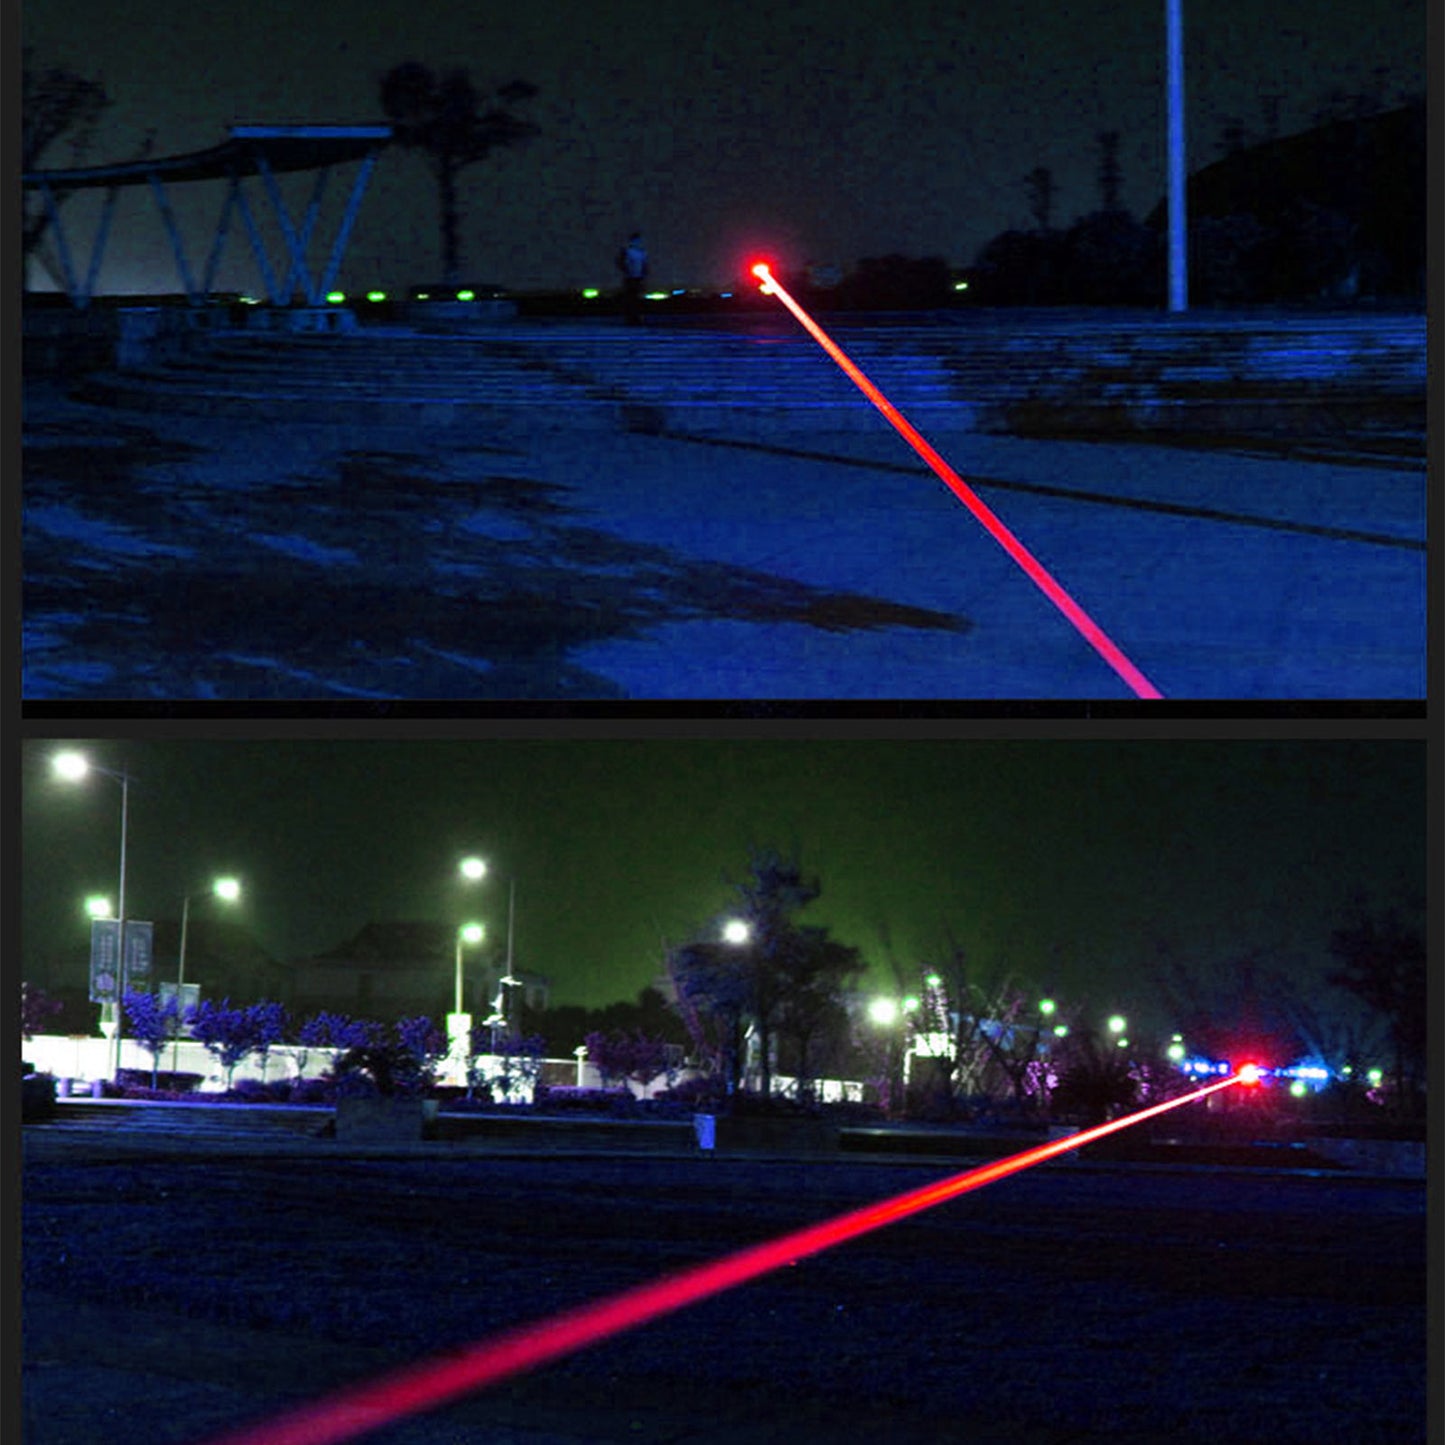 Wiederaufladbarer Laserpointer Beam Light Rot Leistungsstarke 650nm Lazer